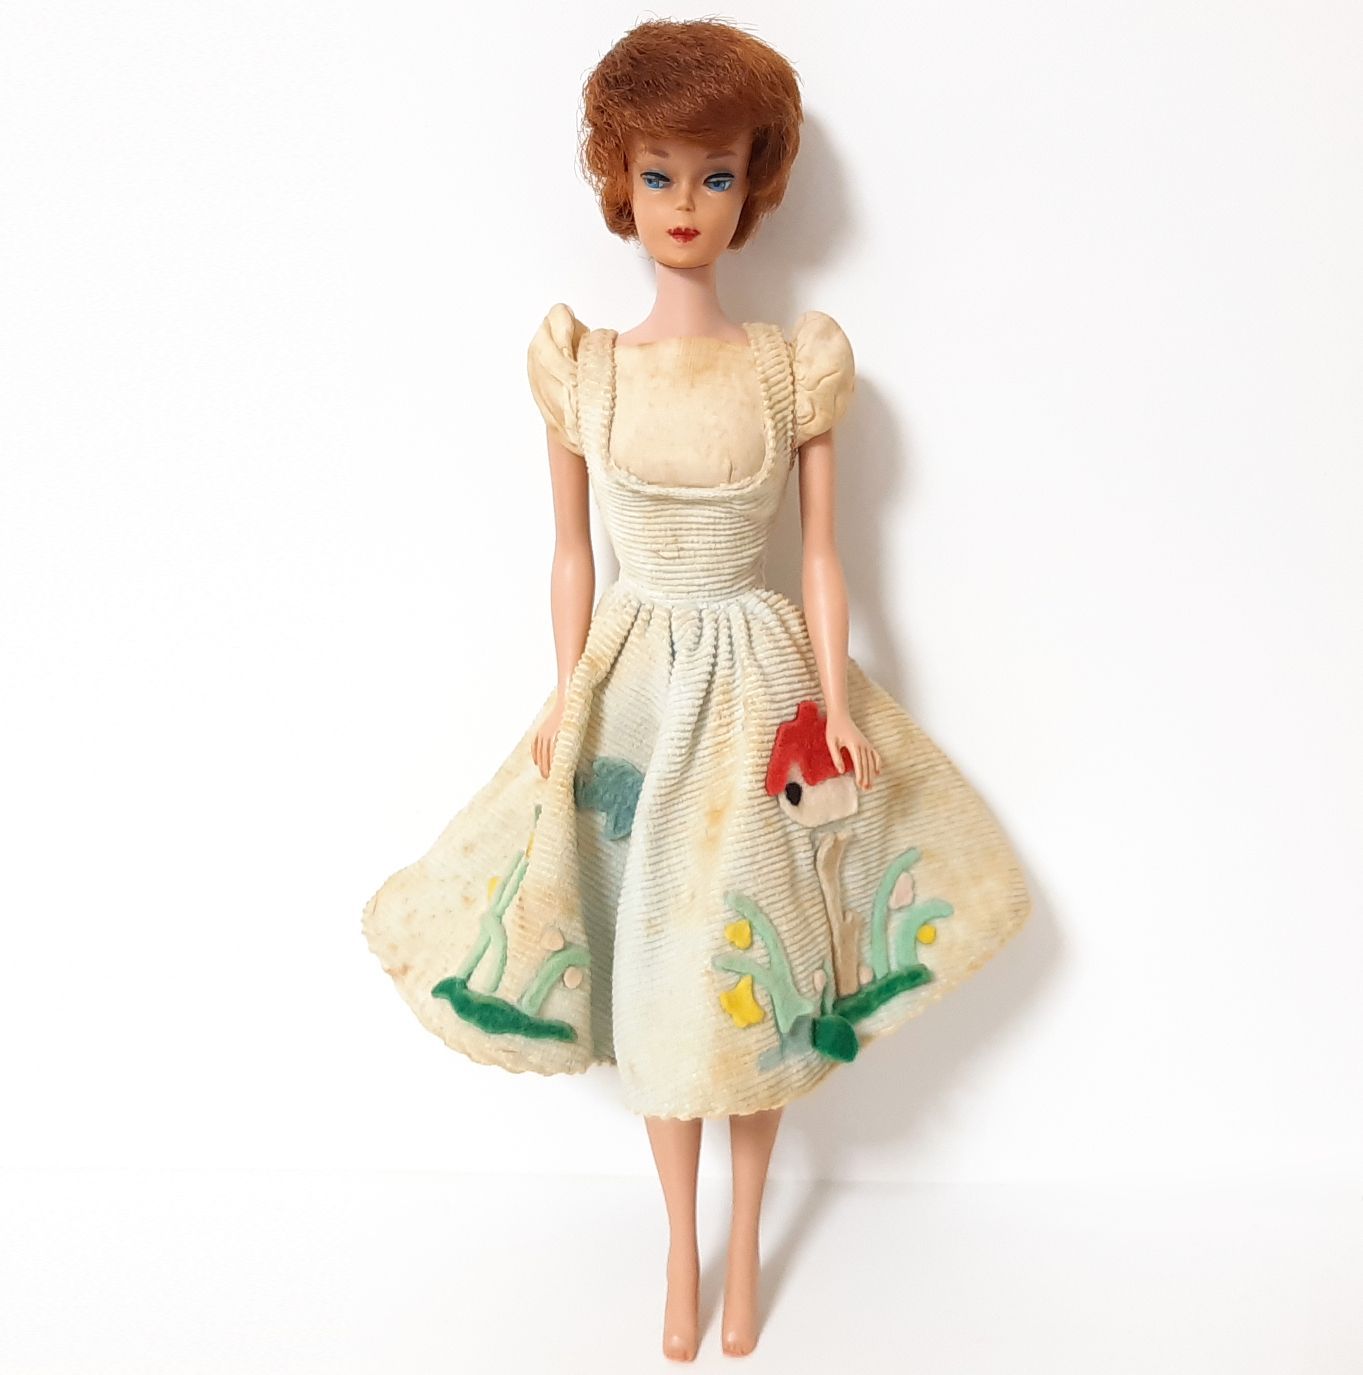 バービー人形 ヴィンテージ 1960年代 マテル社製 - 人形